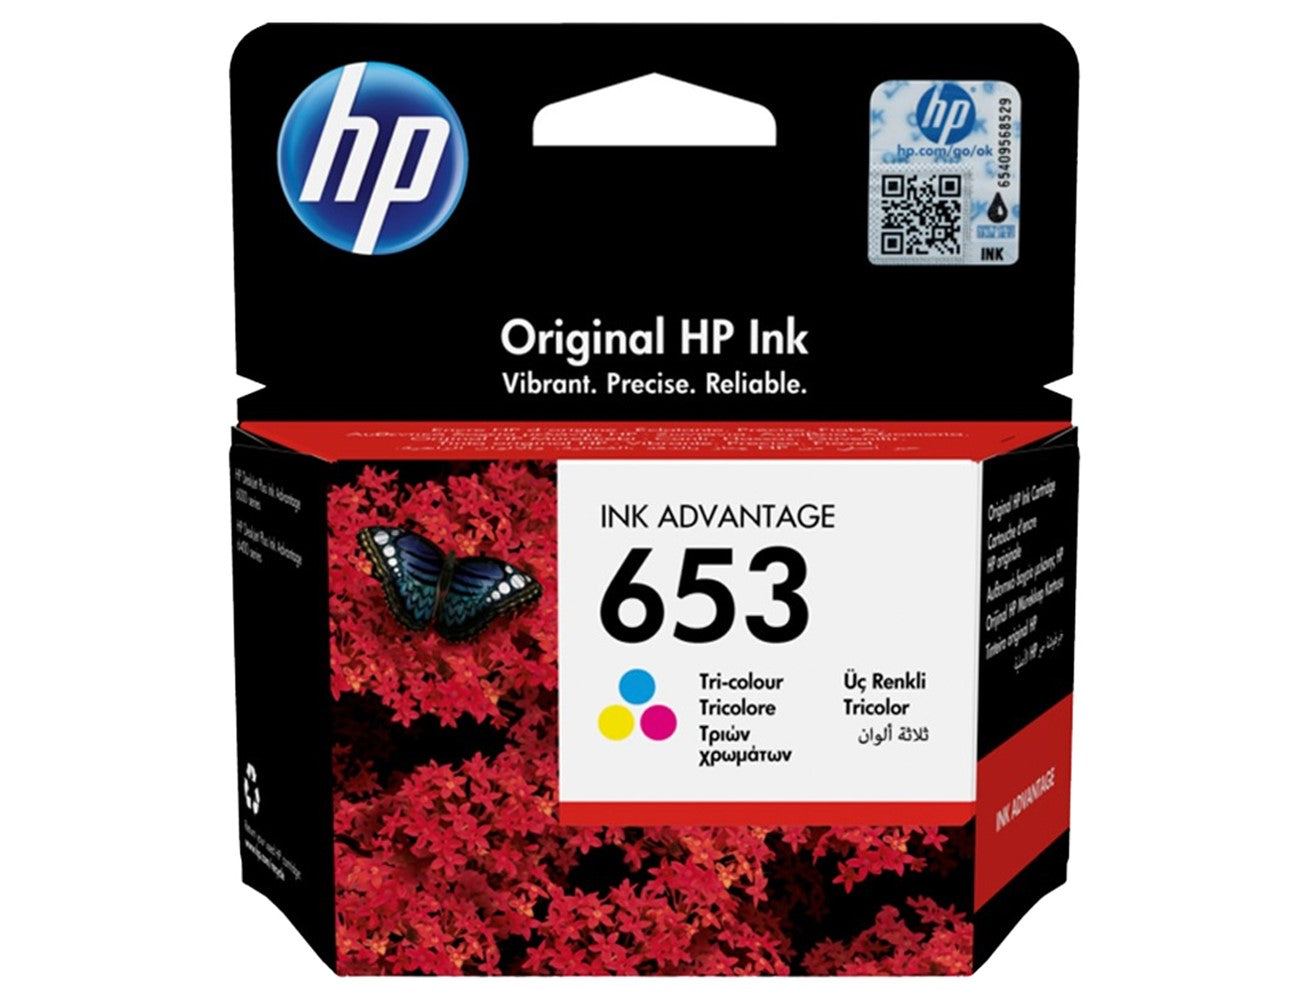 HP 653 Original Tri-color Ink Cartridge